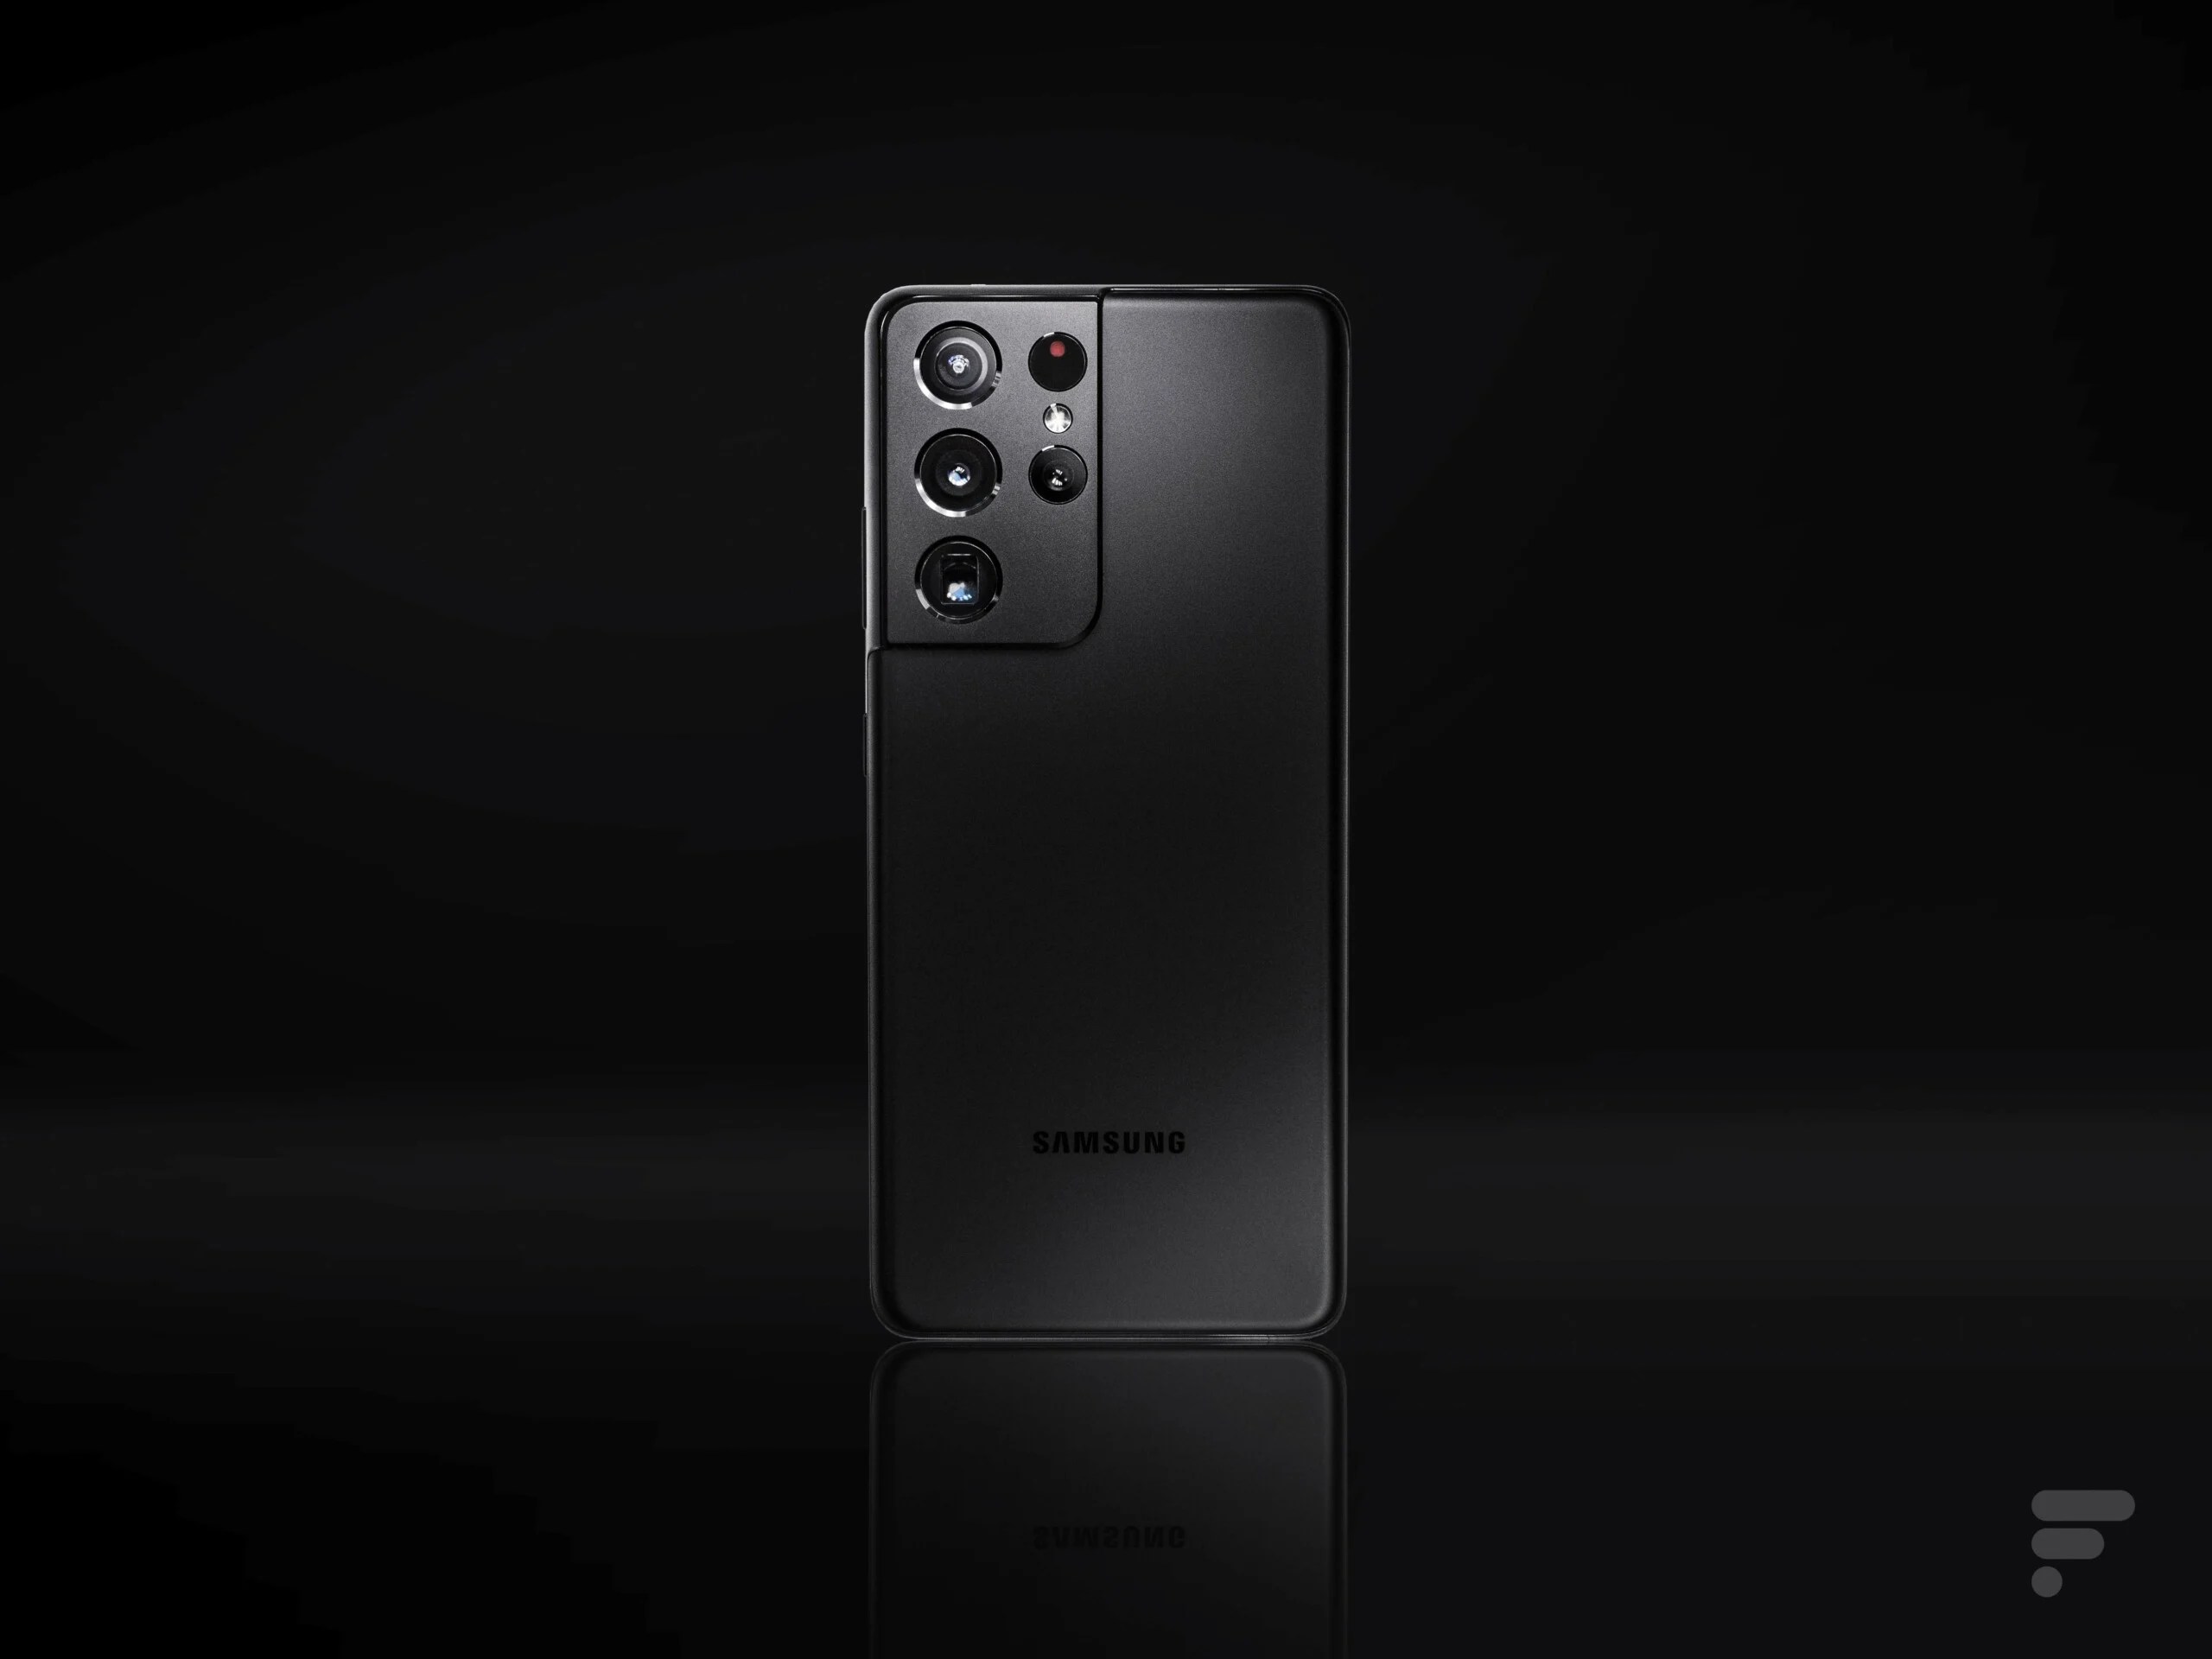 Samsung Galaxy S21 Ultra : moins bon en photo que le Galaxy S20 Ultra selon DxOMark